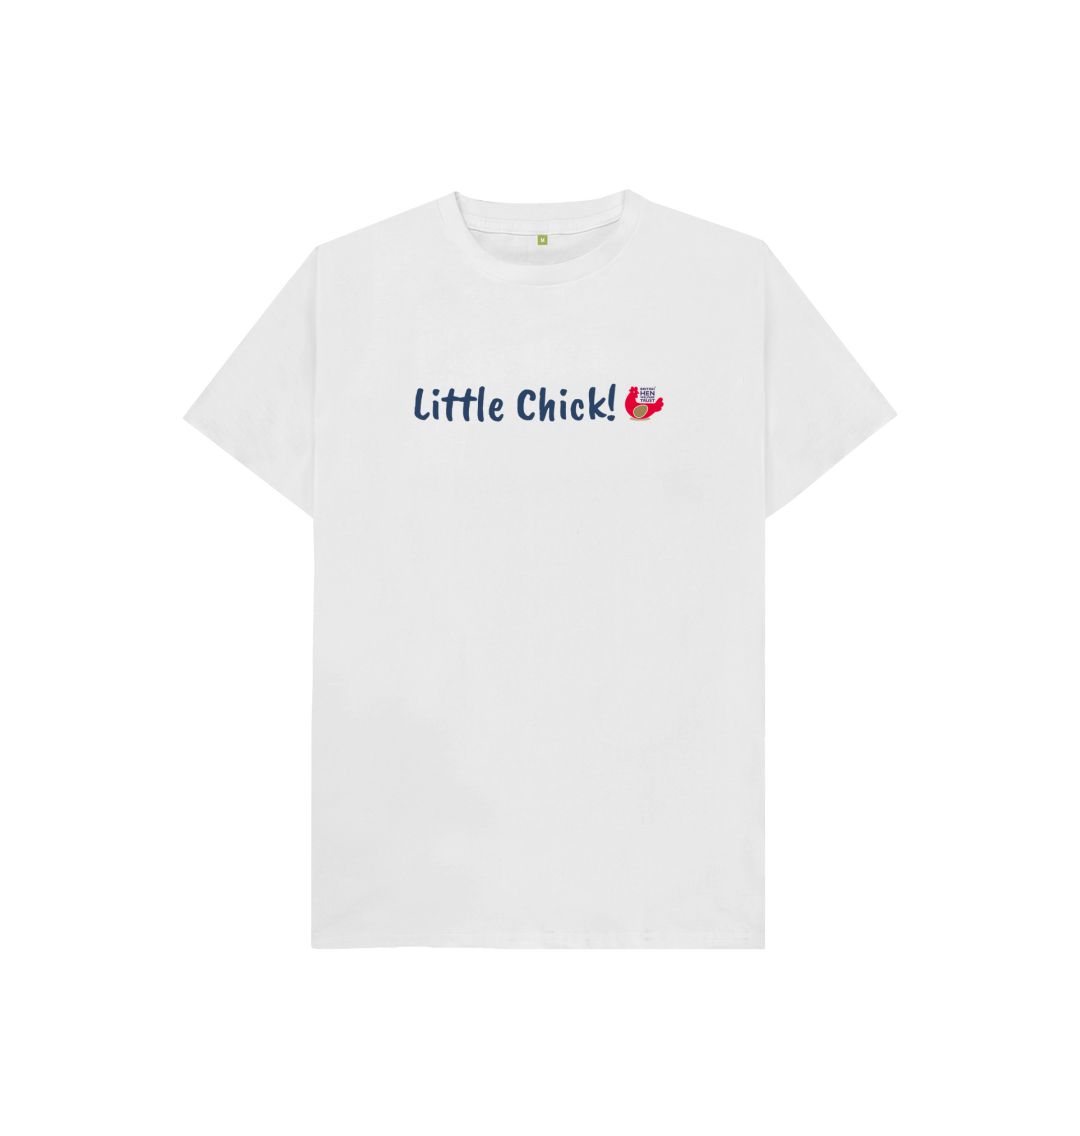 White Little Chick! Kids Unisex Short Sleeve T-Shirt